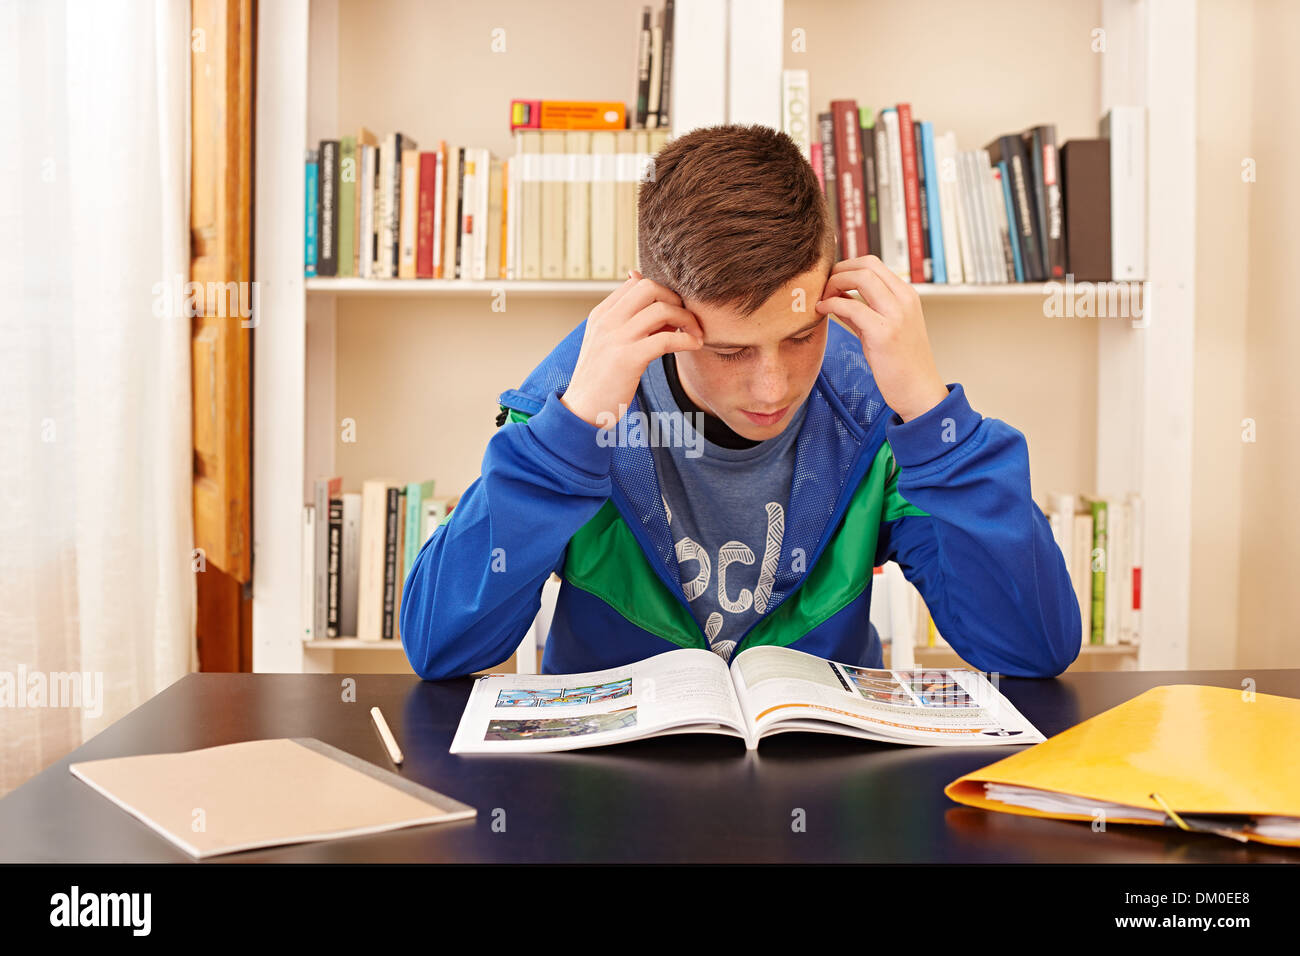 Adolescent mâle étudiant concentré dans un bureau Banque D'Images